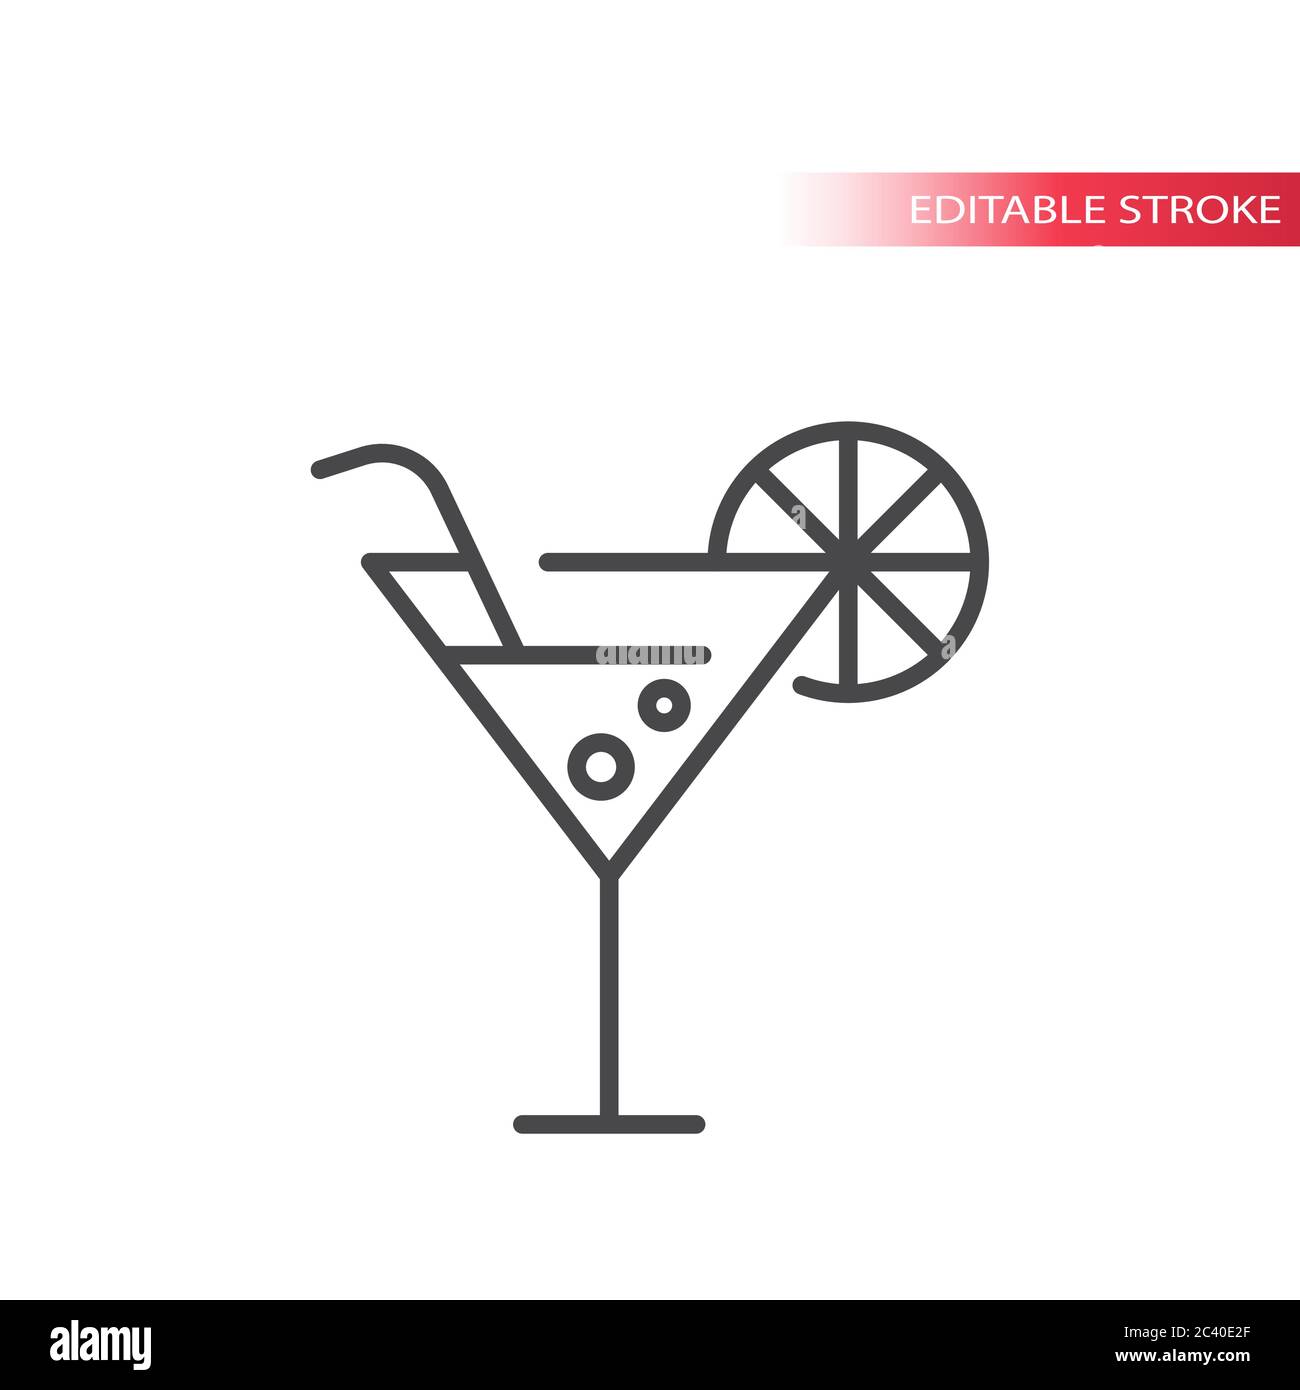 Cocktail- oder martini-Glas mit dünnen Linien als Vektorsymbol. Martini-Getränk mit Stroh und Zitronenscheibe Umriss Symbol, editierbare Kontur. Stock Vektor